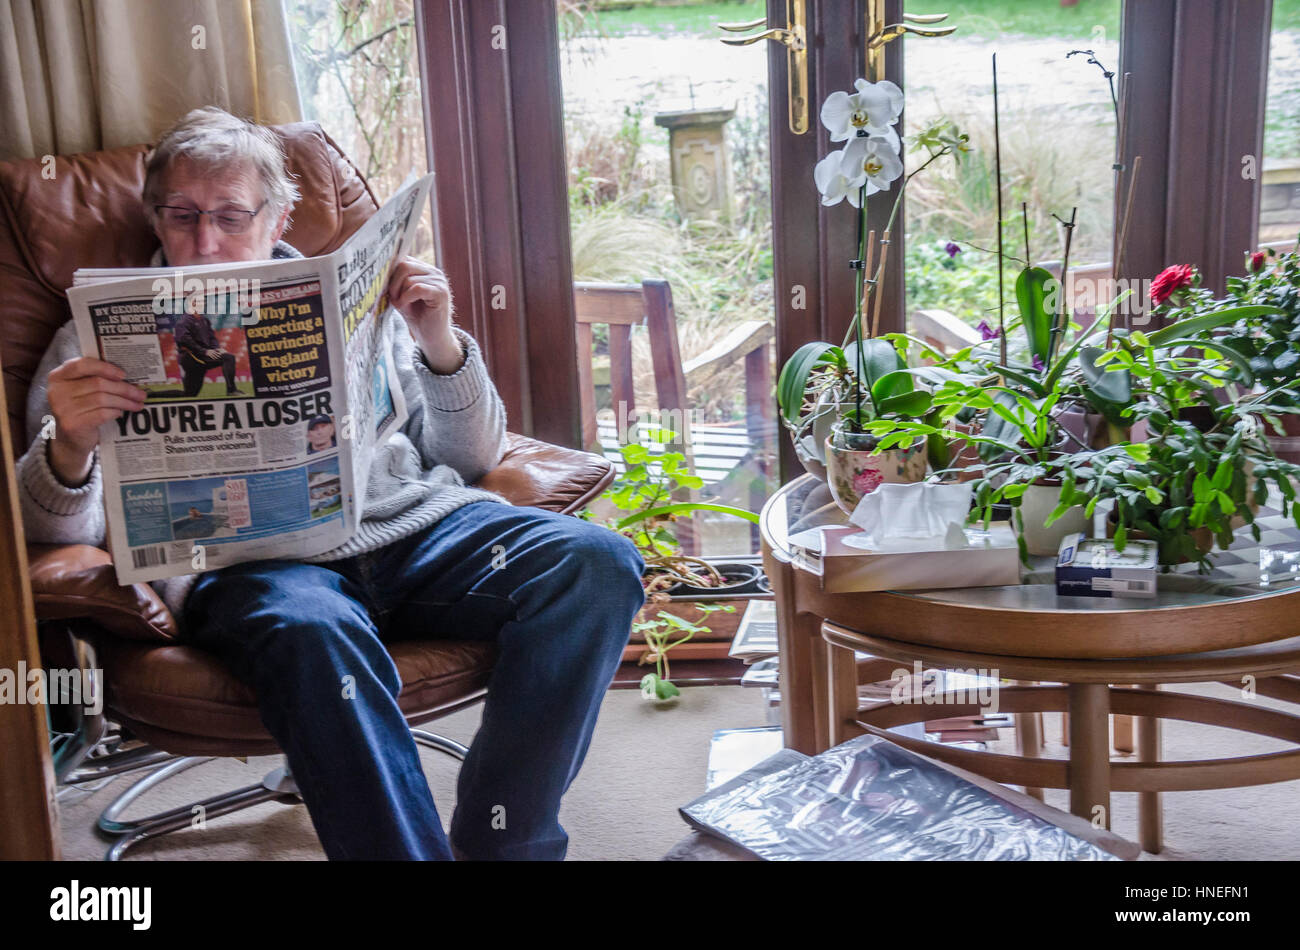 Un uomo si siede in una comoda poltrona leggendo il quotidiano Daily Mail. Foto Stock